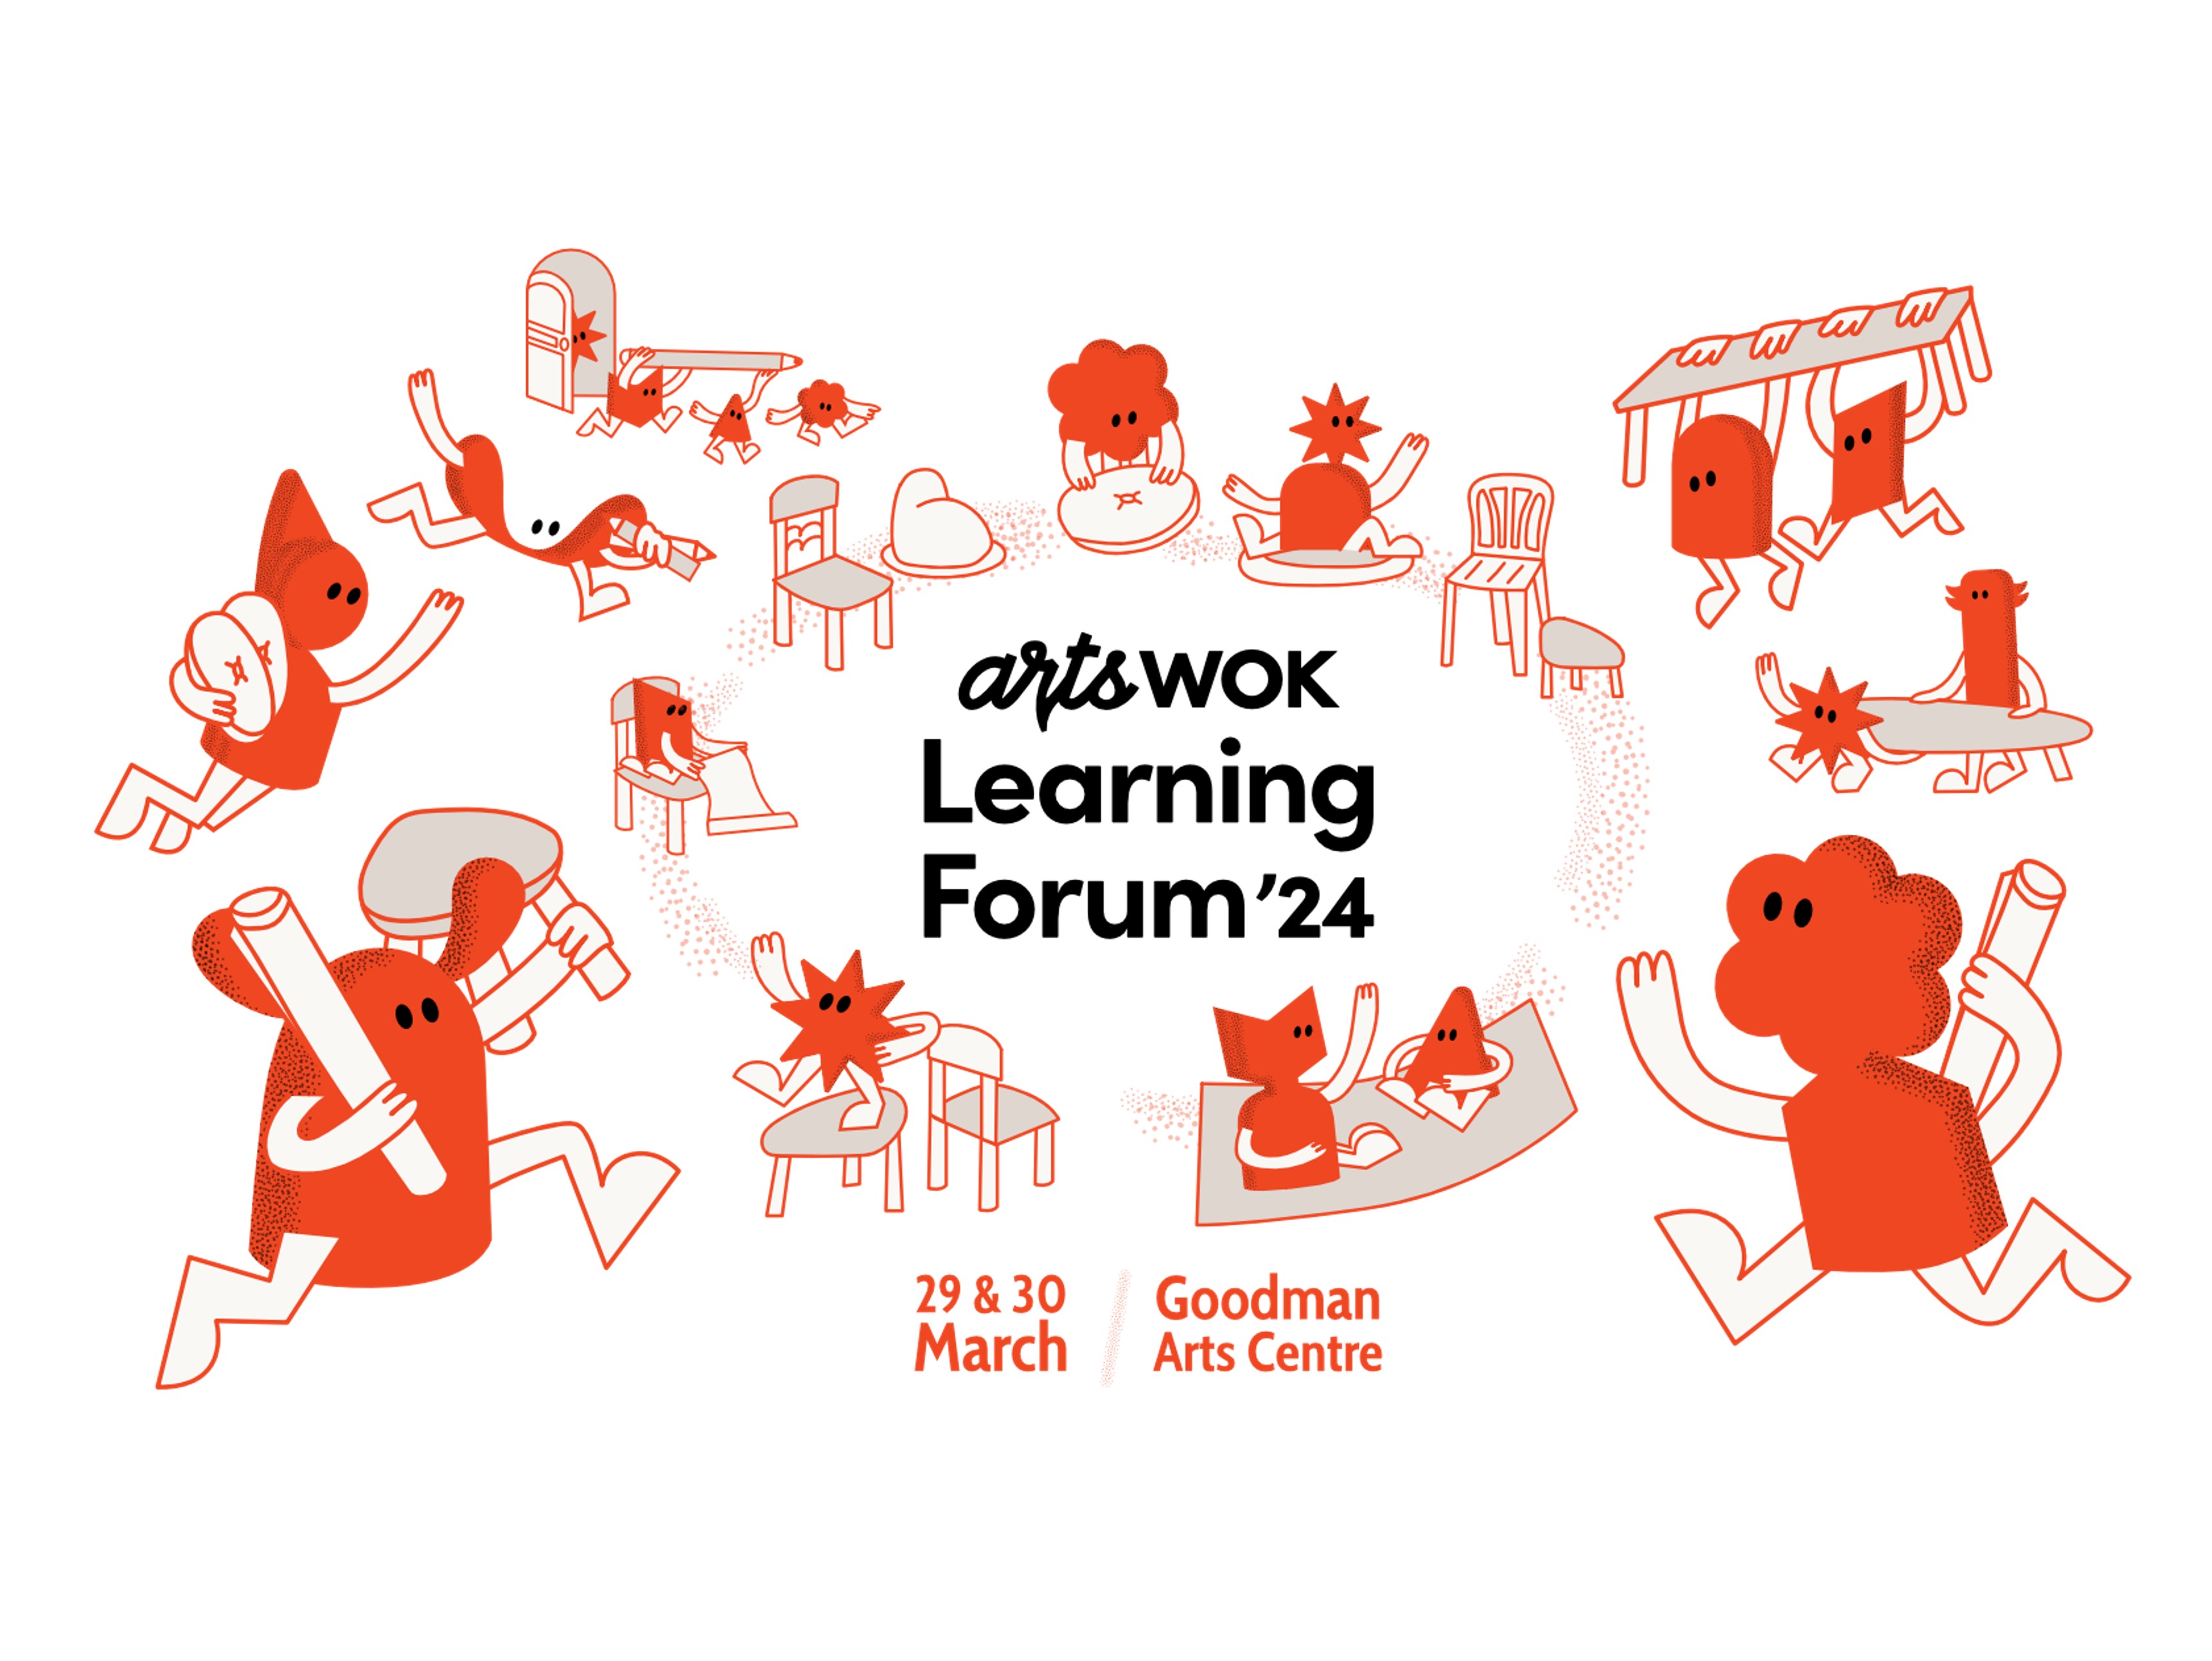 artswok Learning Forum'24